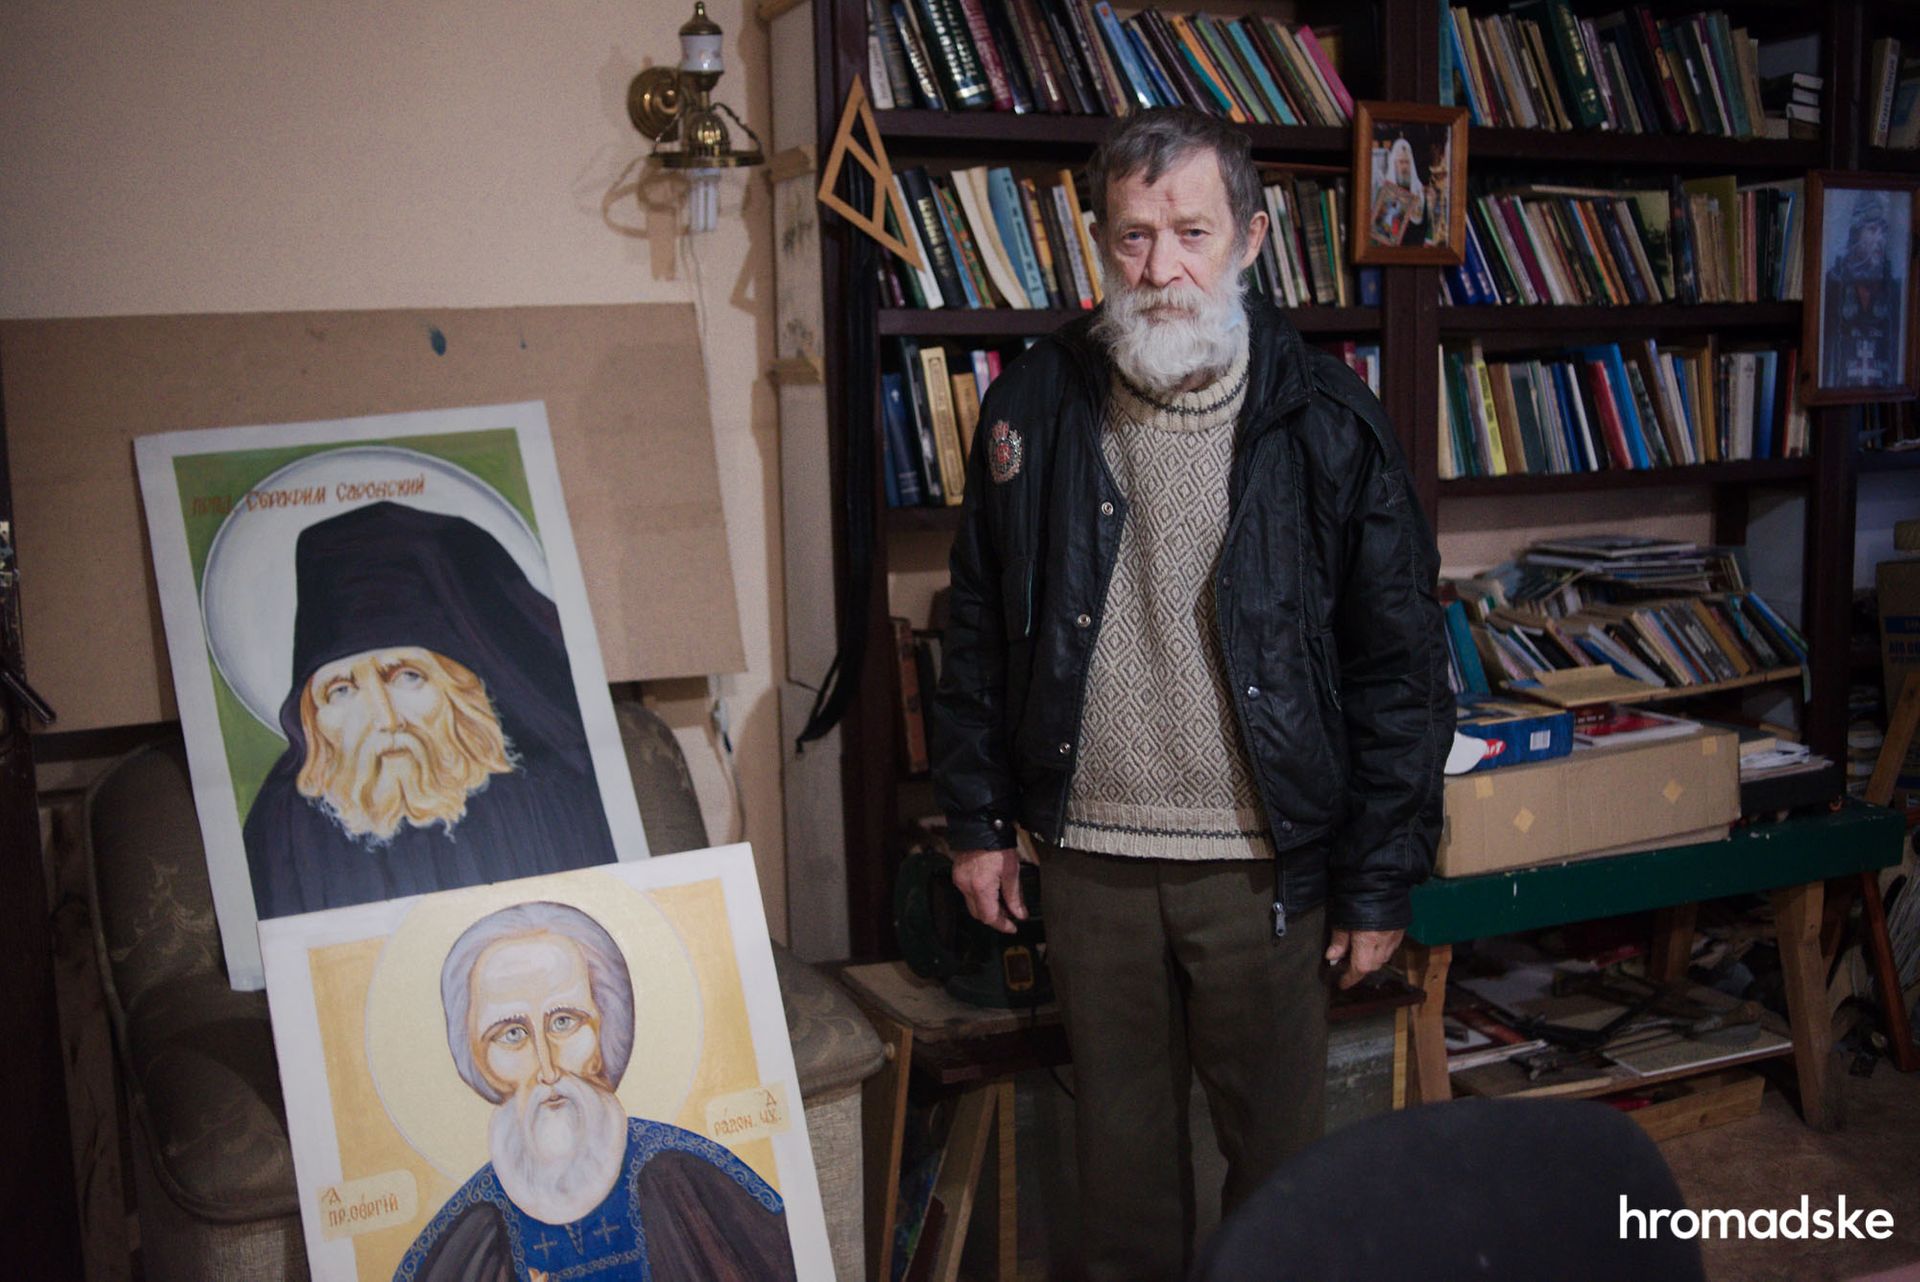 64-летний Сергей Аксёненко показывает иконы Серафима Саровского и Сергия Радонежского. Фото: Макс Левин/hromadske